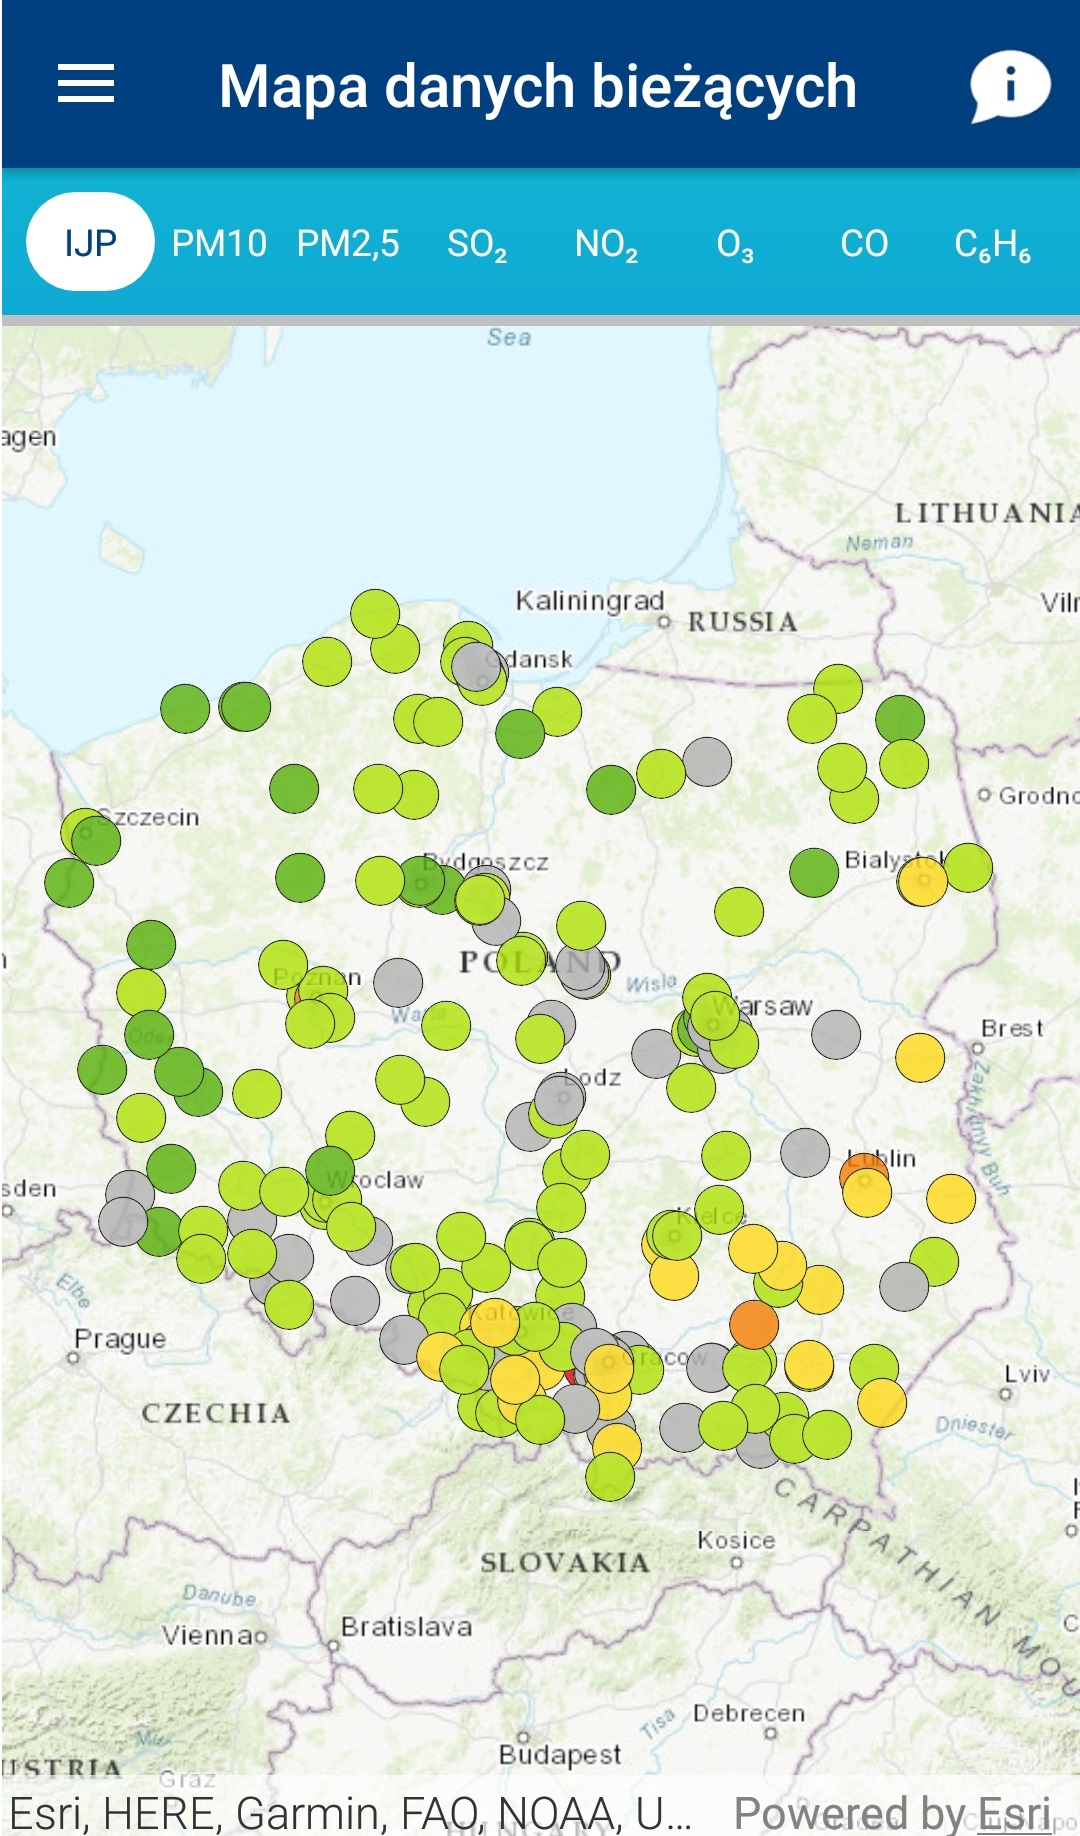 Zdjęcie mapy bieżących danych w aplikacji mobilnej Jakość Powietrza w Polsce